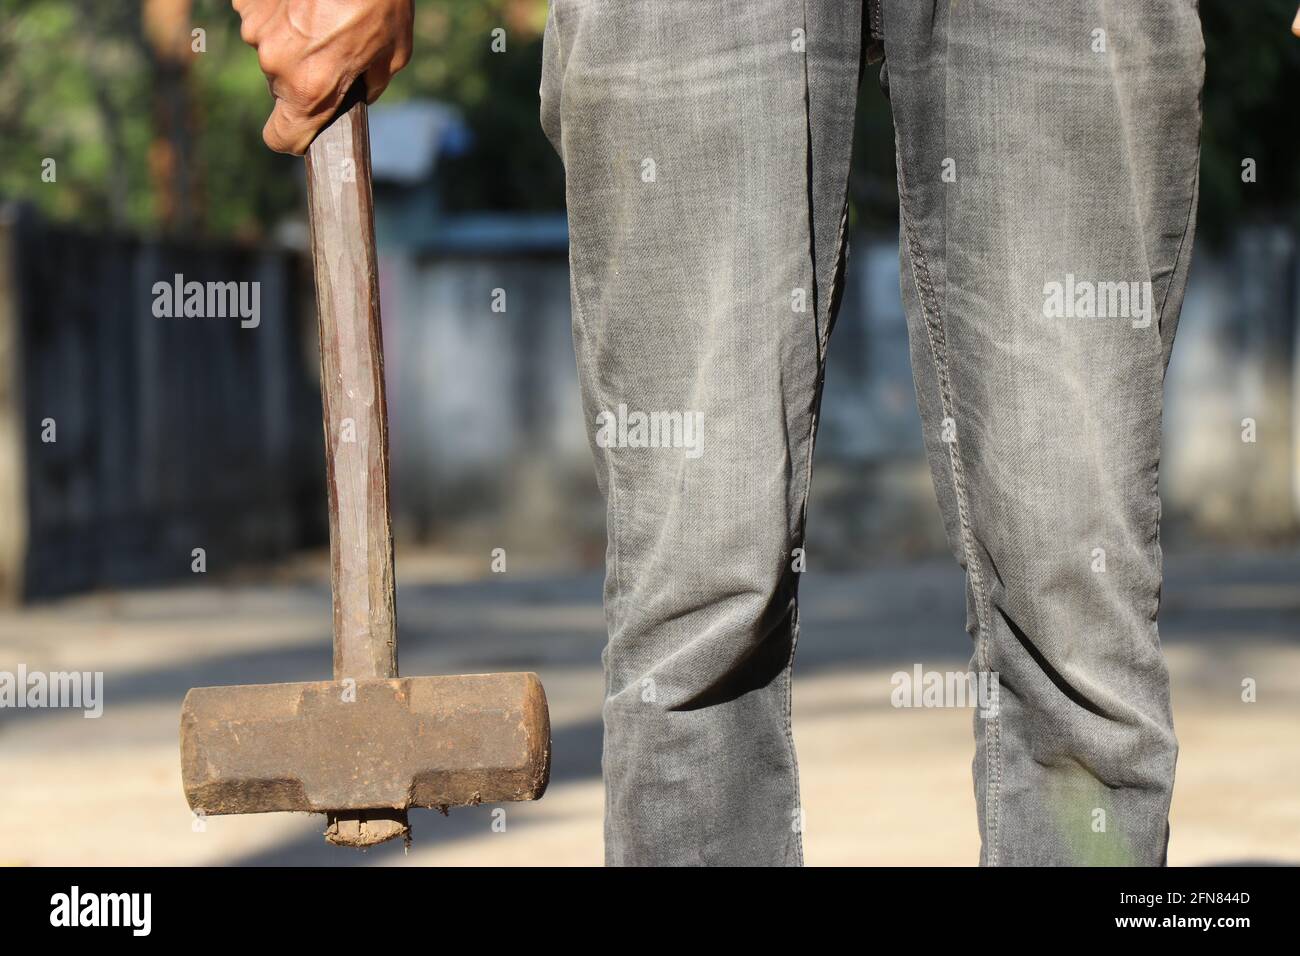 Mann, der einen alten und rostigen Hammer mit Holzgriff an einer Hand hält. Hammer, das Eisenwerkzeug für Konstruktionszwecke ist Stockfoto